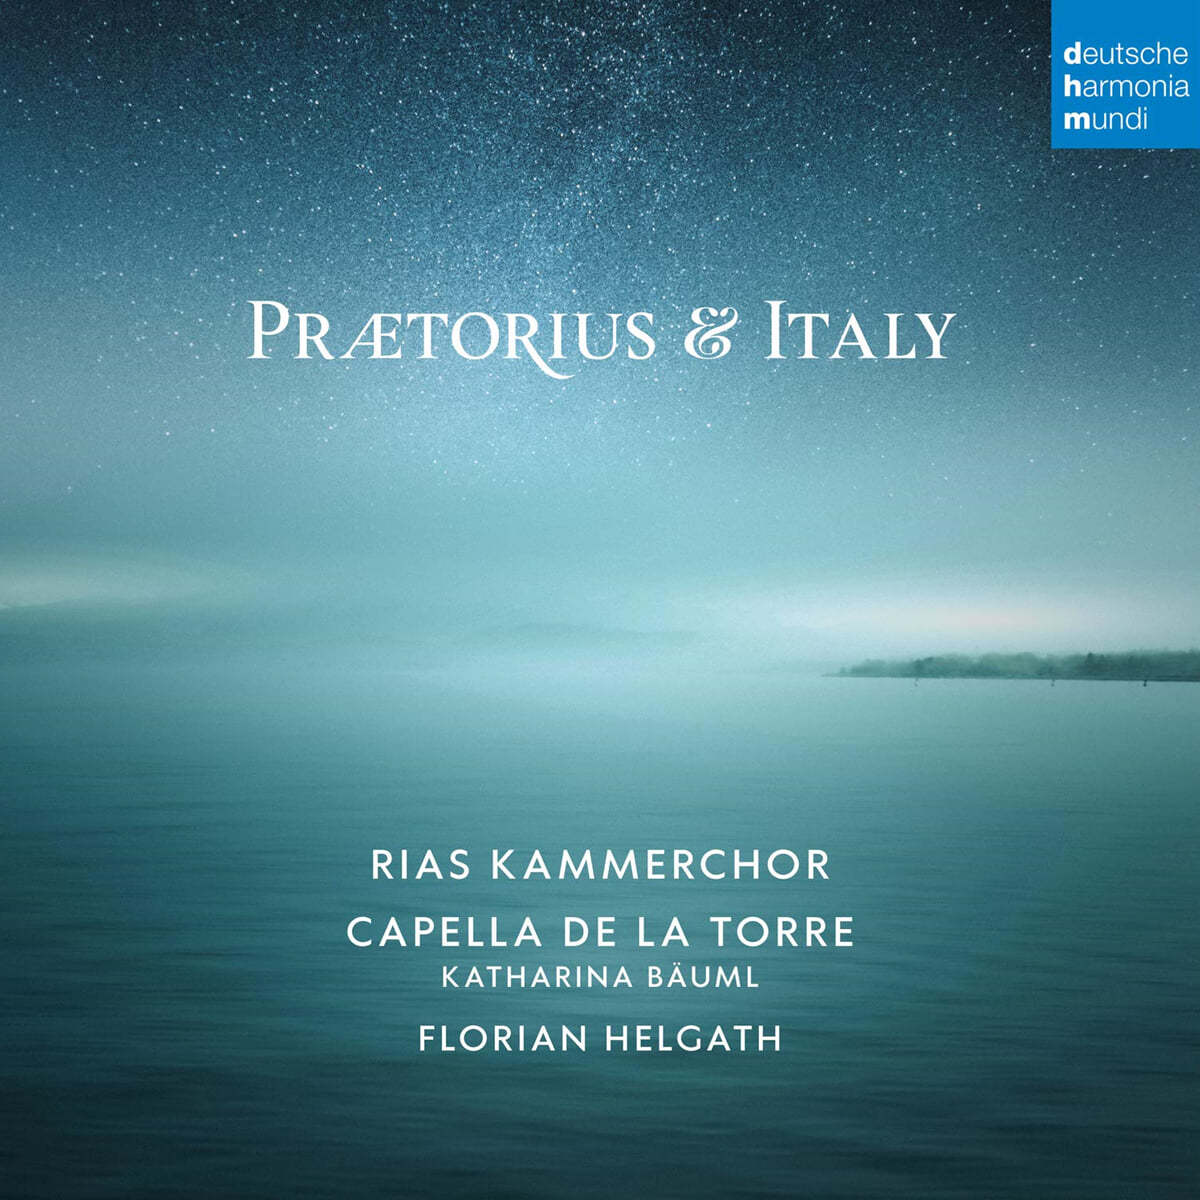 RIAS Kammerchor 프레토리우스와 동시대 이탈리아 작곡가들의 음악 (Praetorius and Italy) 